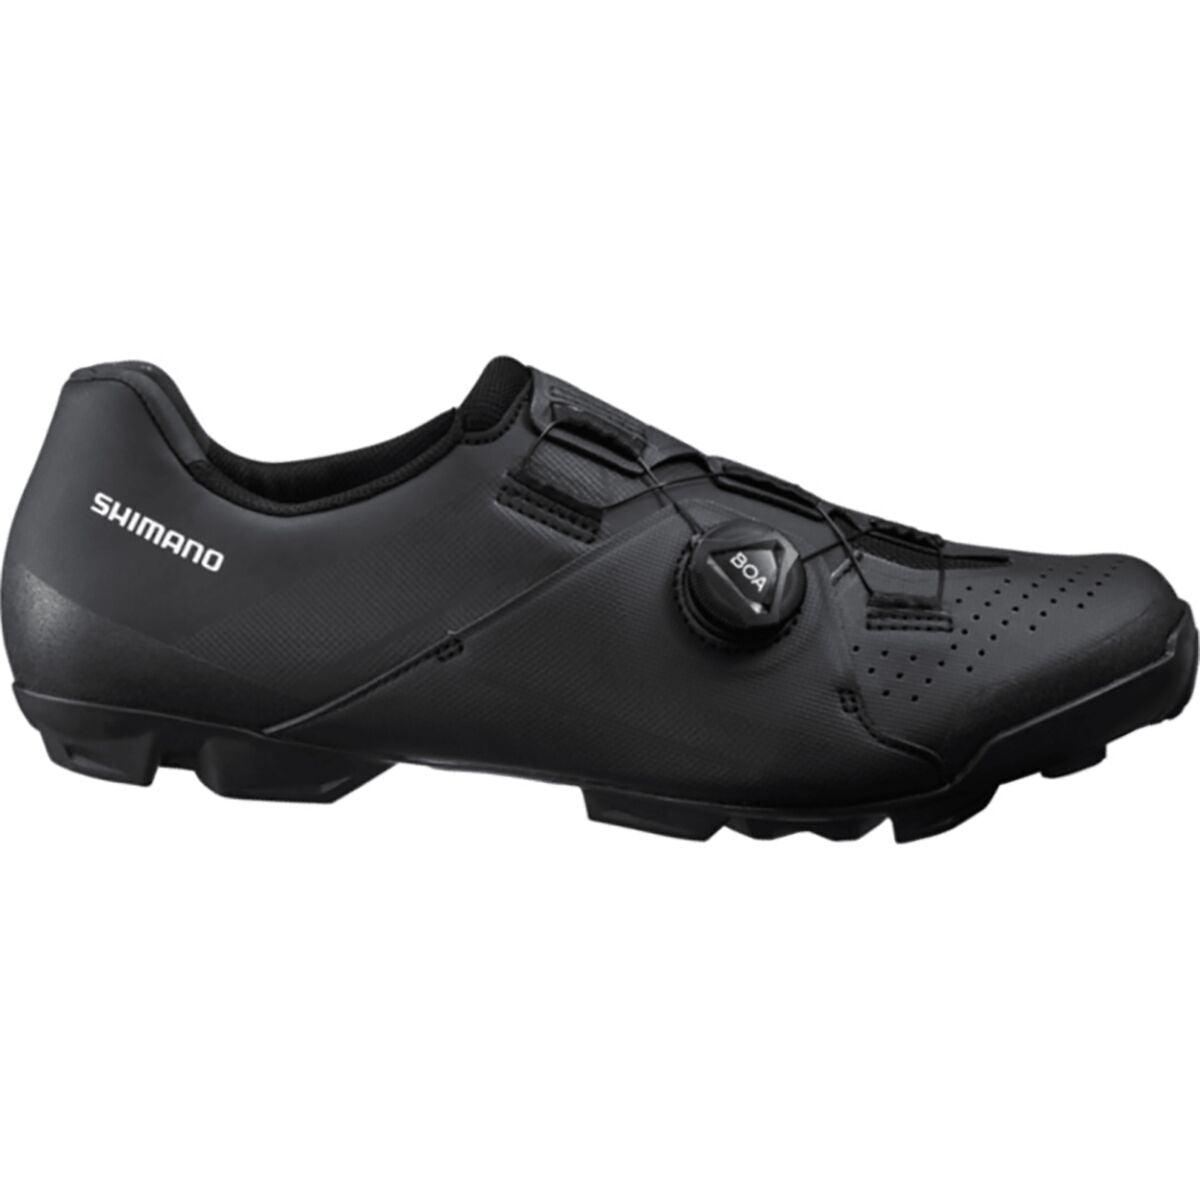 Photos - Cycling Shoes Shimano XC3 Mountain Bike Shoes - Black - 47 ESHXC300MGL01S4700G 